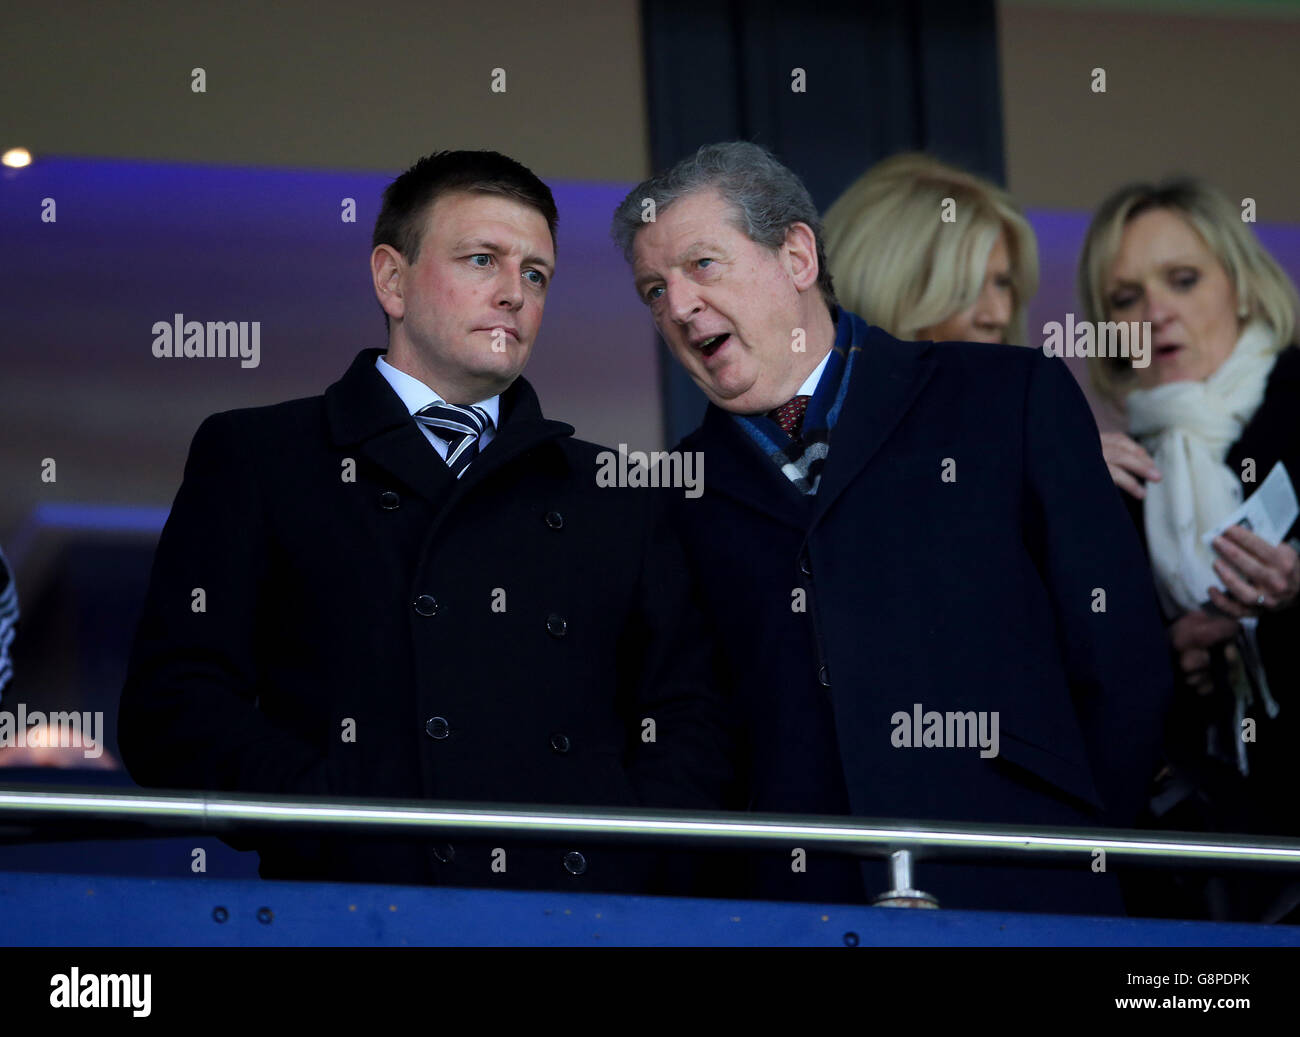 Richard Garlick, directeur de l'administration du football chez West Bromwich Albion (à gauche) et Roy Hodgson, directeur de l'Angleterre (à droite) lors du match de la première ligue de Barclays à Hawthorns, West Bromwich. Banque D'Images